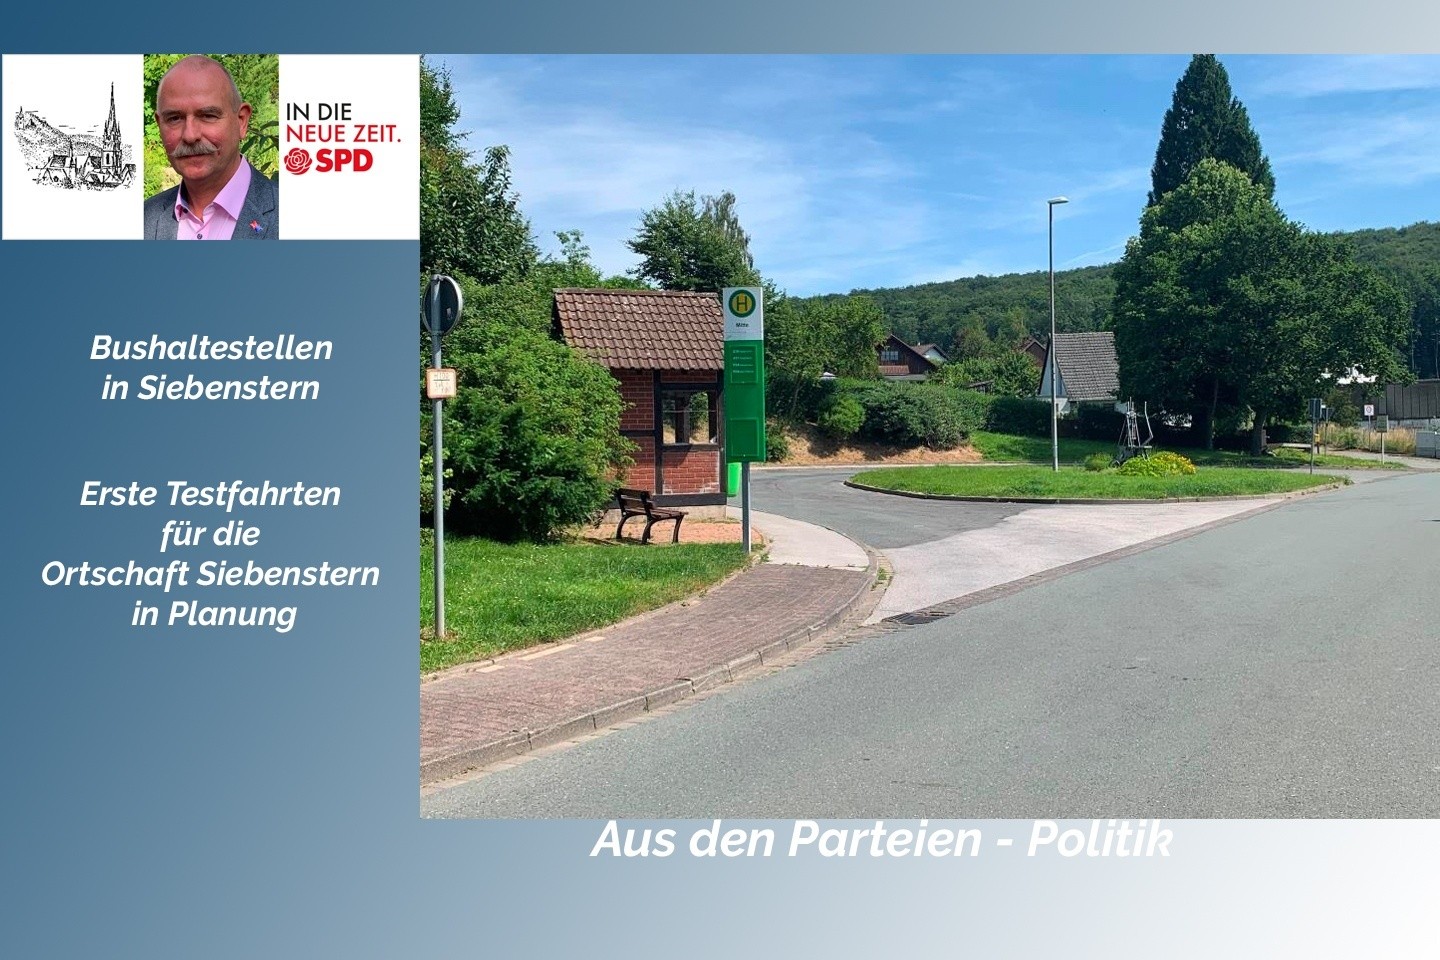 Bushaltestellen in Siebenstern: Erste Testfahrten für die Ortschaft Siebenstern in Planung